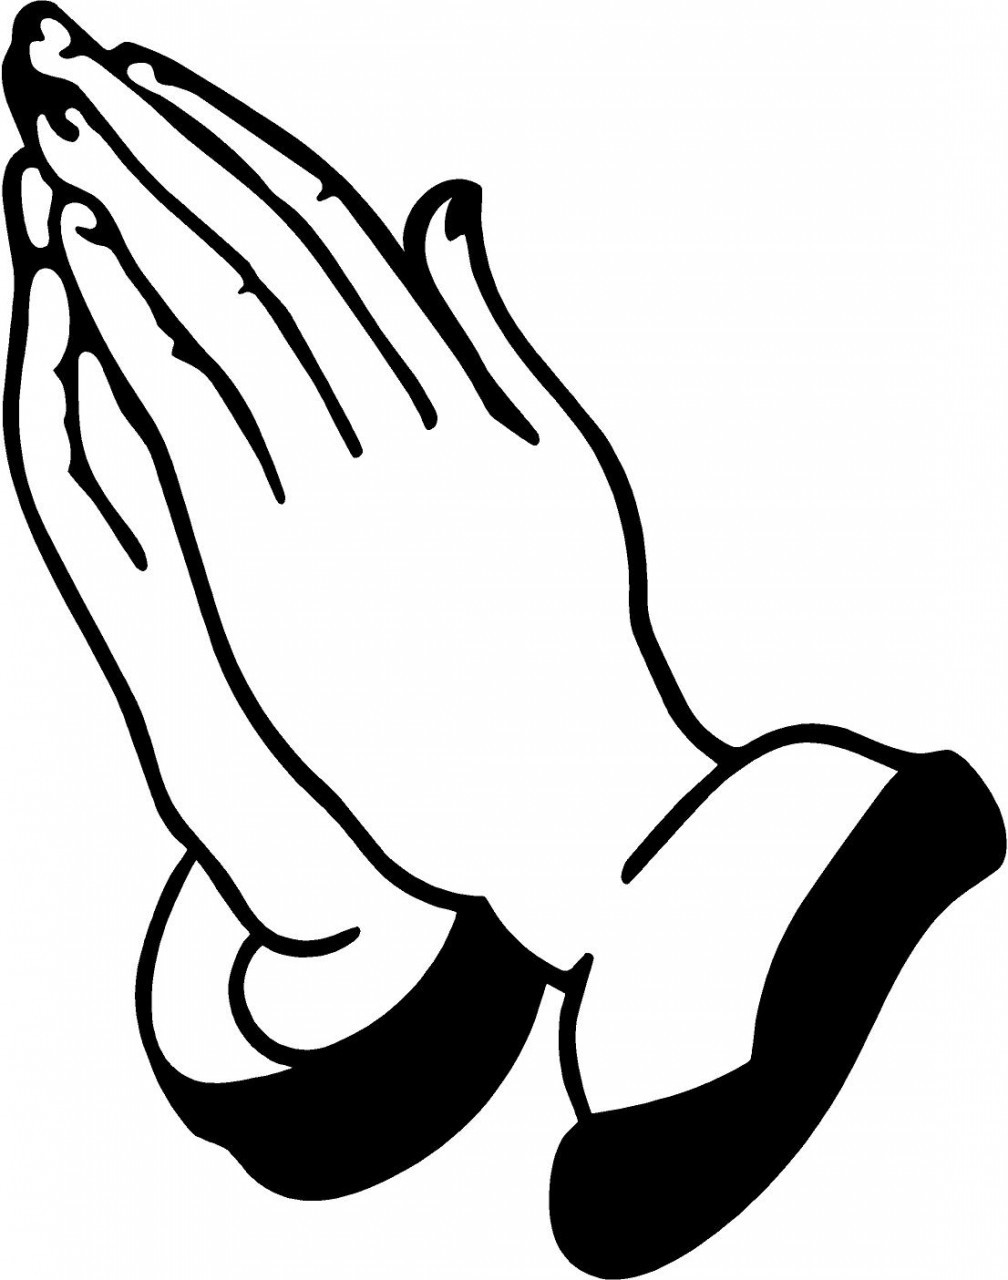 Prayer Hands 